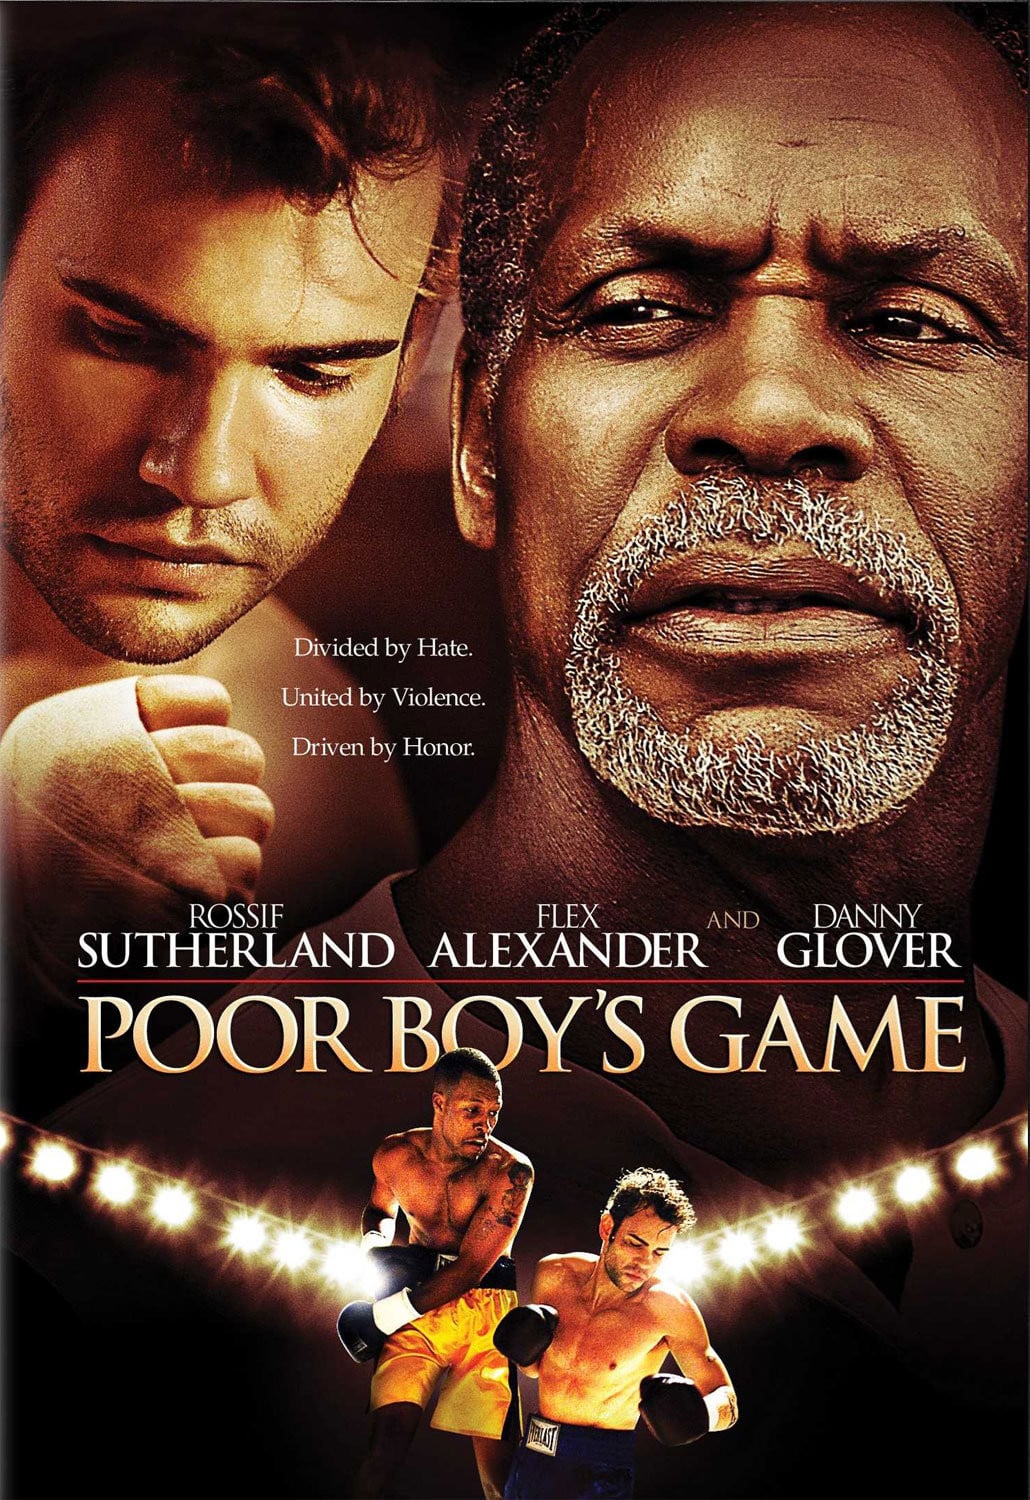 Plakat von "Poor Boy's Game"